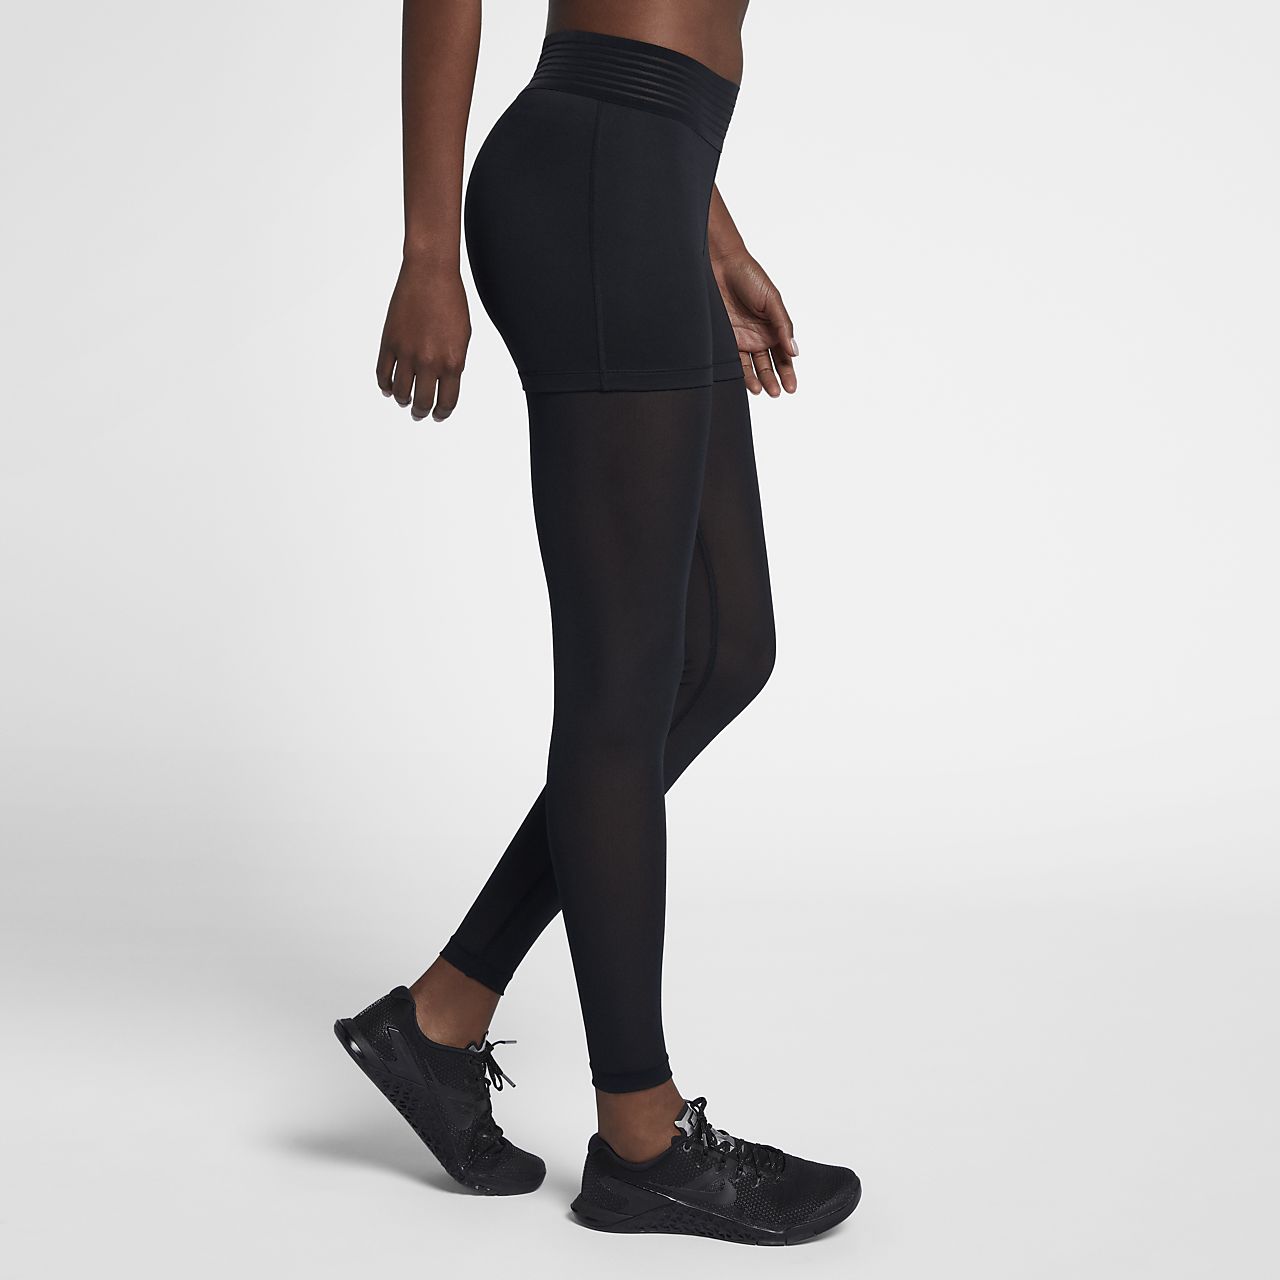 Nike Wmns Pro Deluxe Training Tights New Black Women Sportswear 932153-010